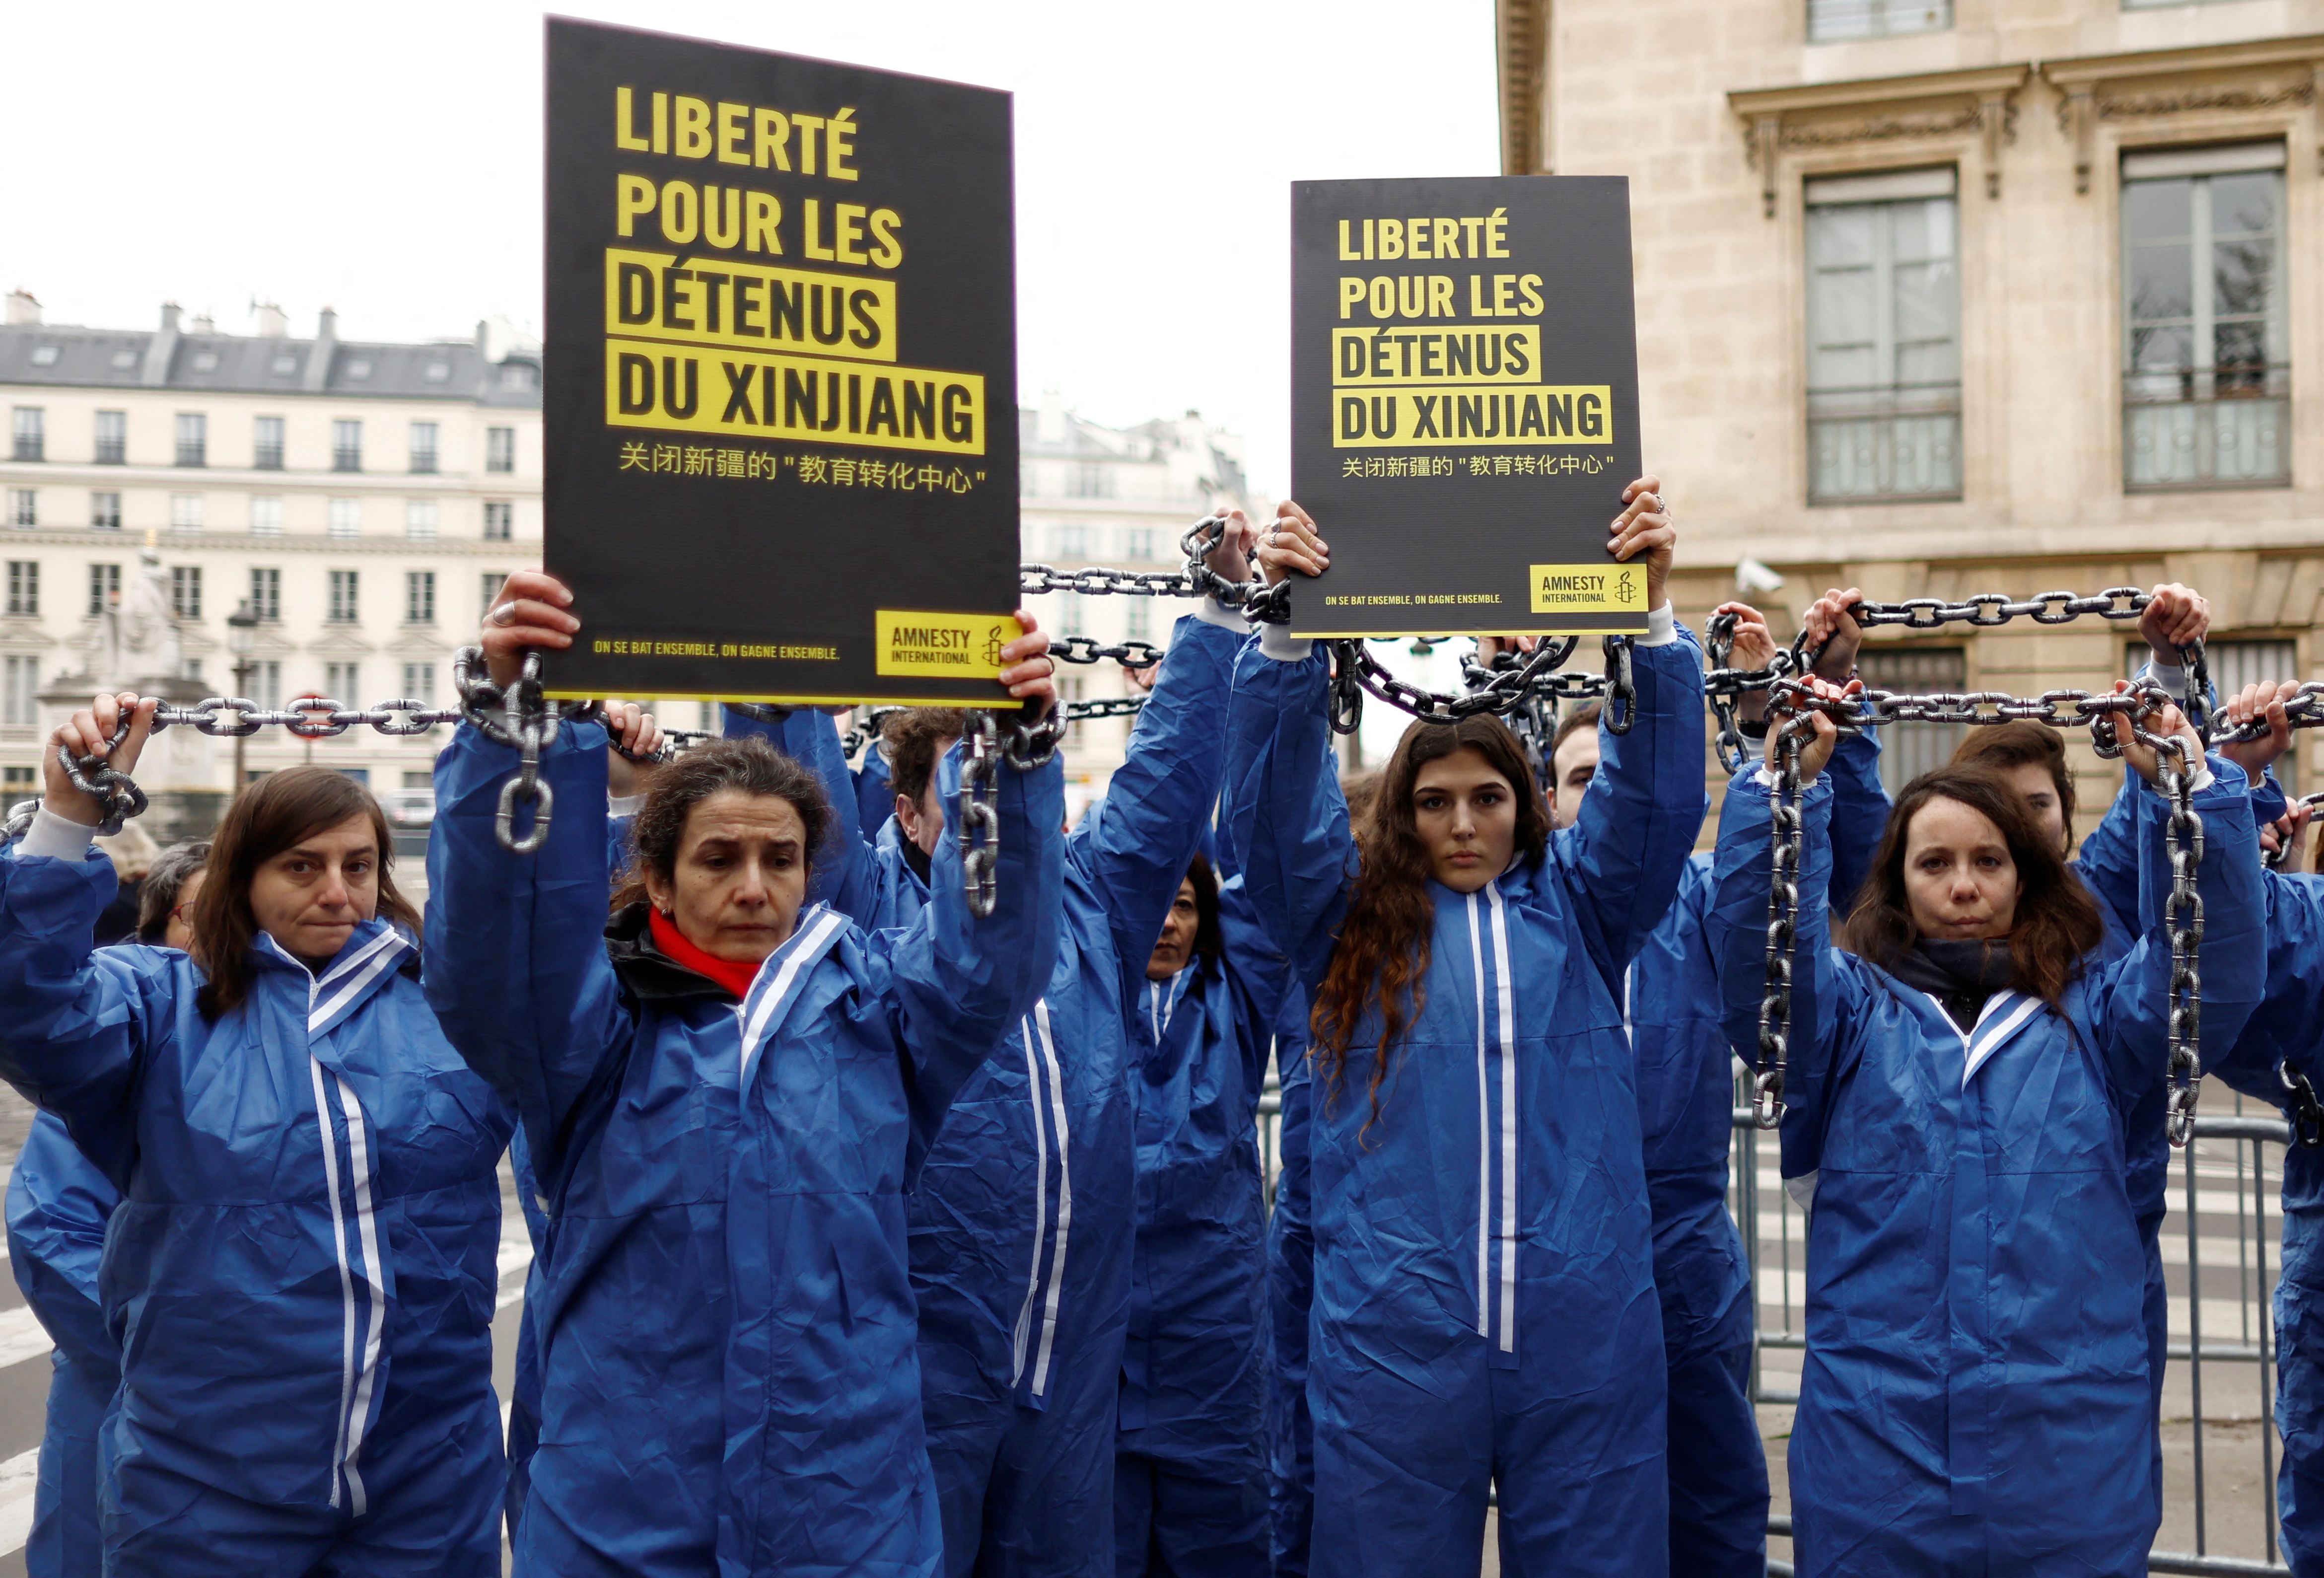 Activistas de Amnistía Internacional participan en una acción de protesta contra las violaciones de derechos humanos en China frente a la Asamblea Nacional en París, Francia, el 26 de enero de 2022. REUTERS/Gonzalo Fuentes